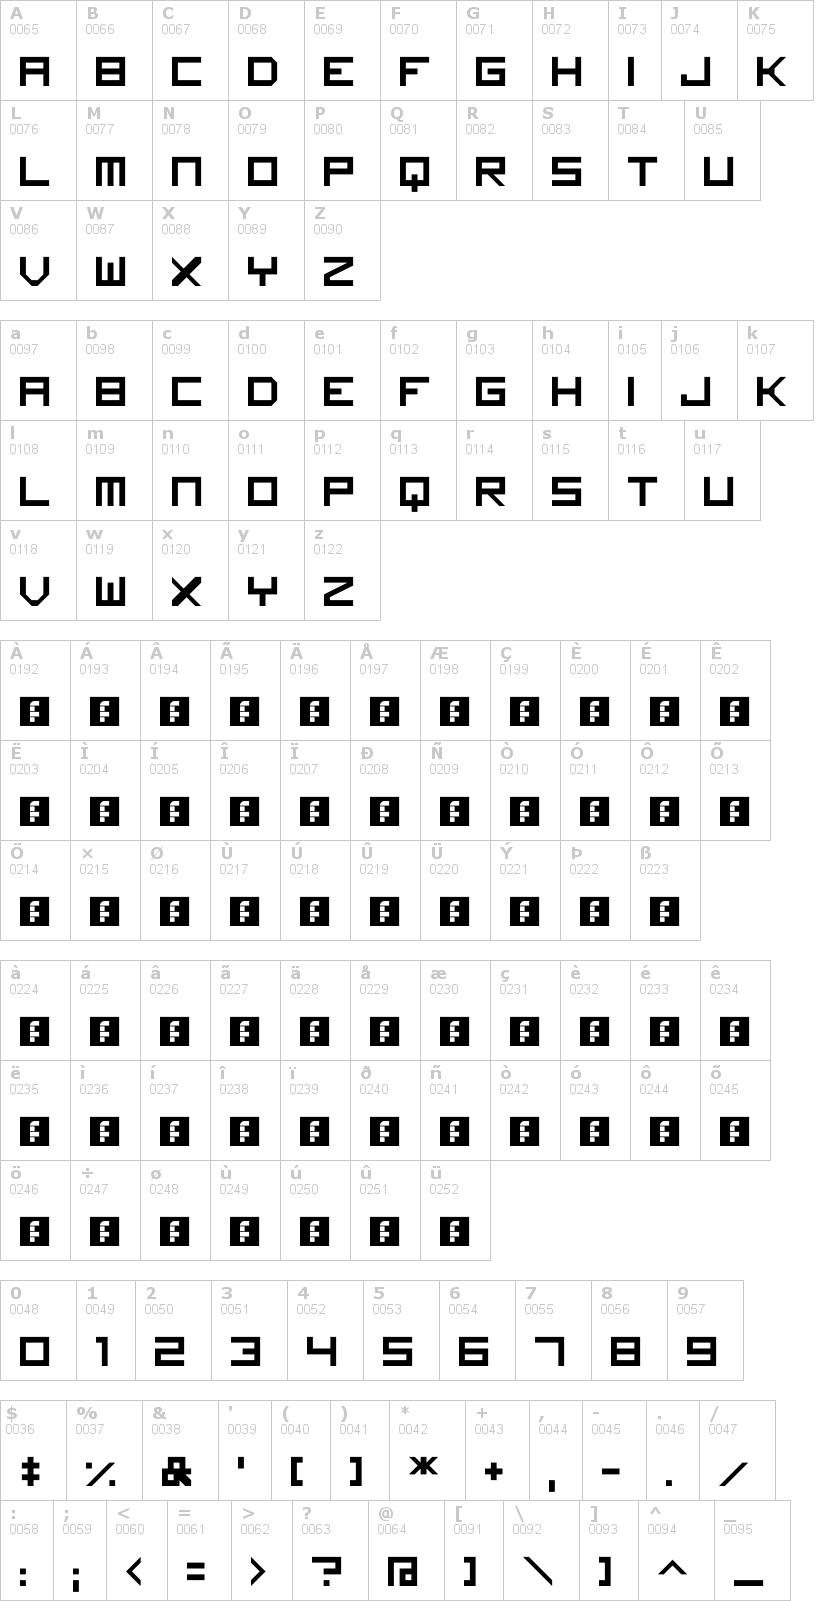 Lettere dell'alfabeto del font imagine-font con le quali è possibile realizzare adesivi prespaziati